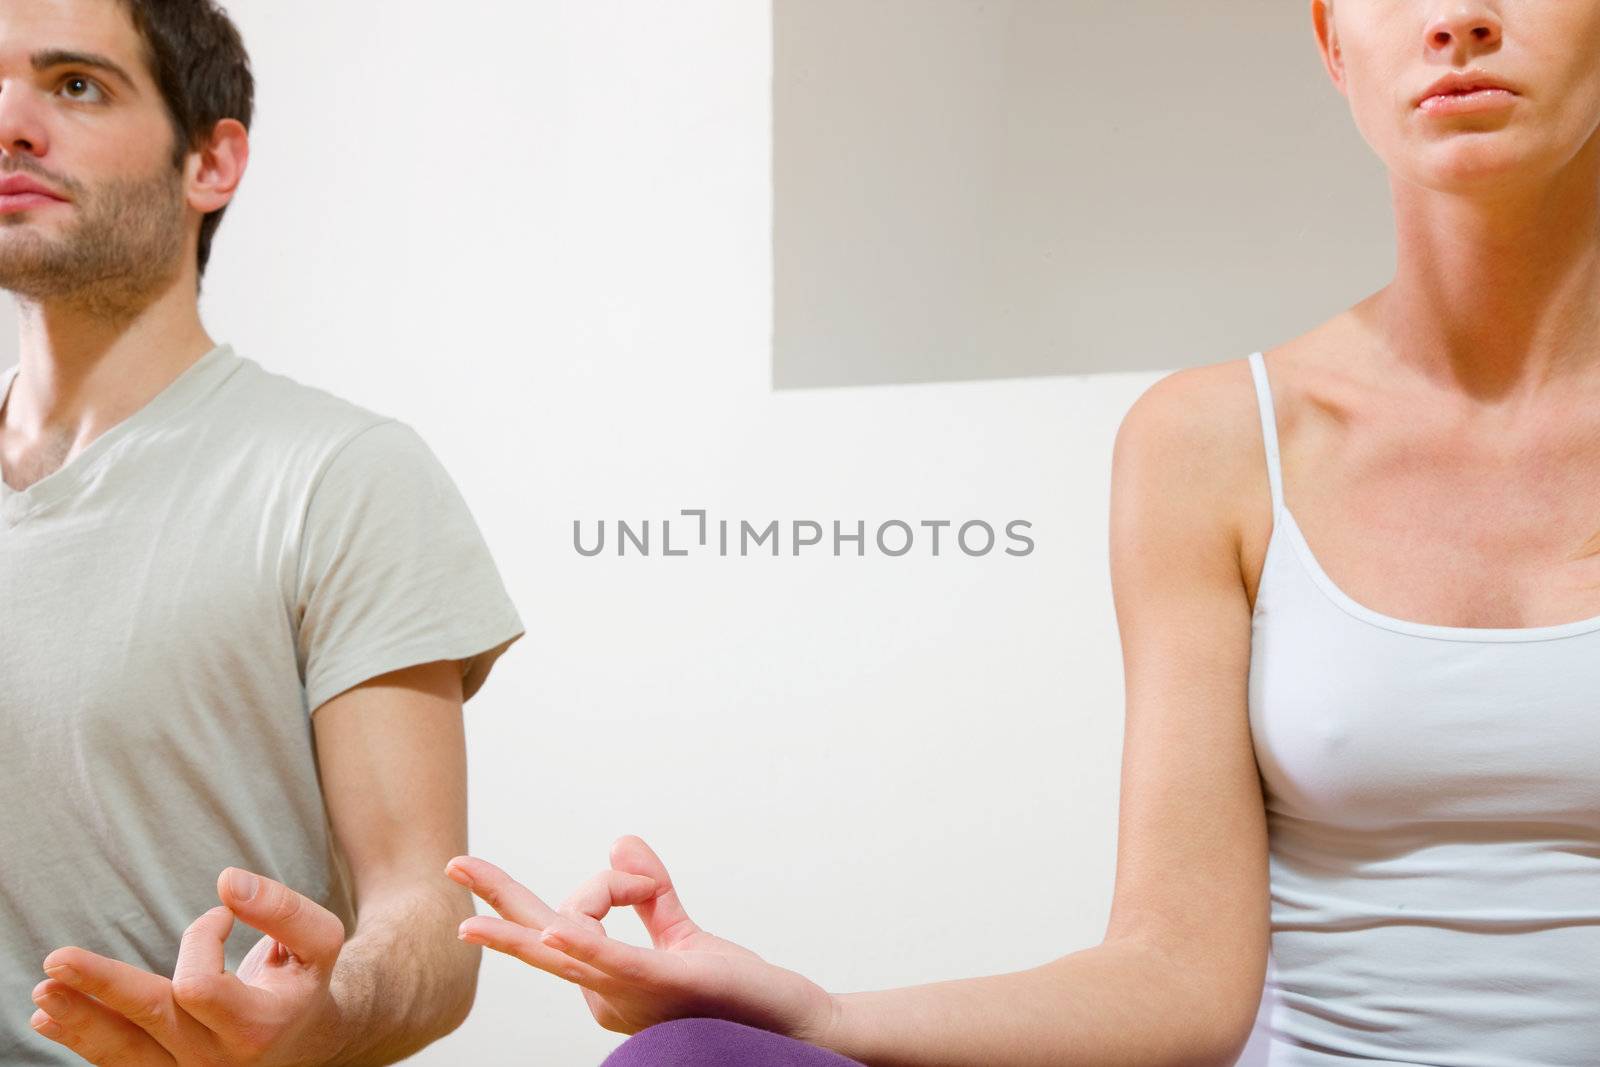 couple sitting on floor doing yoga by ambro